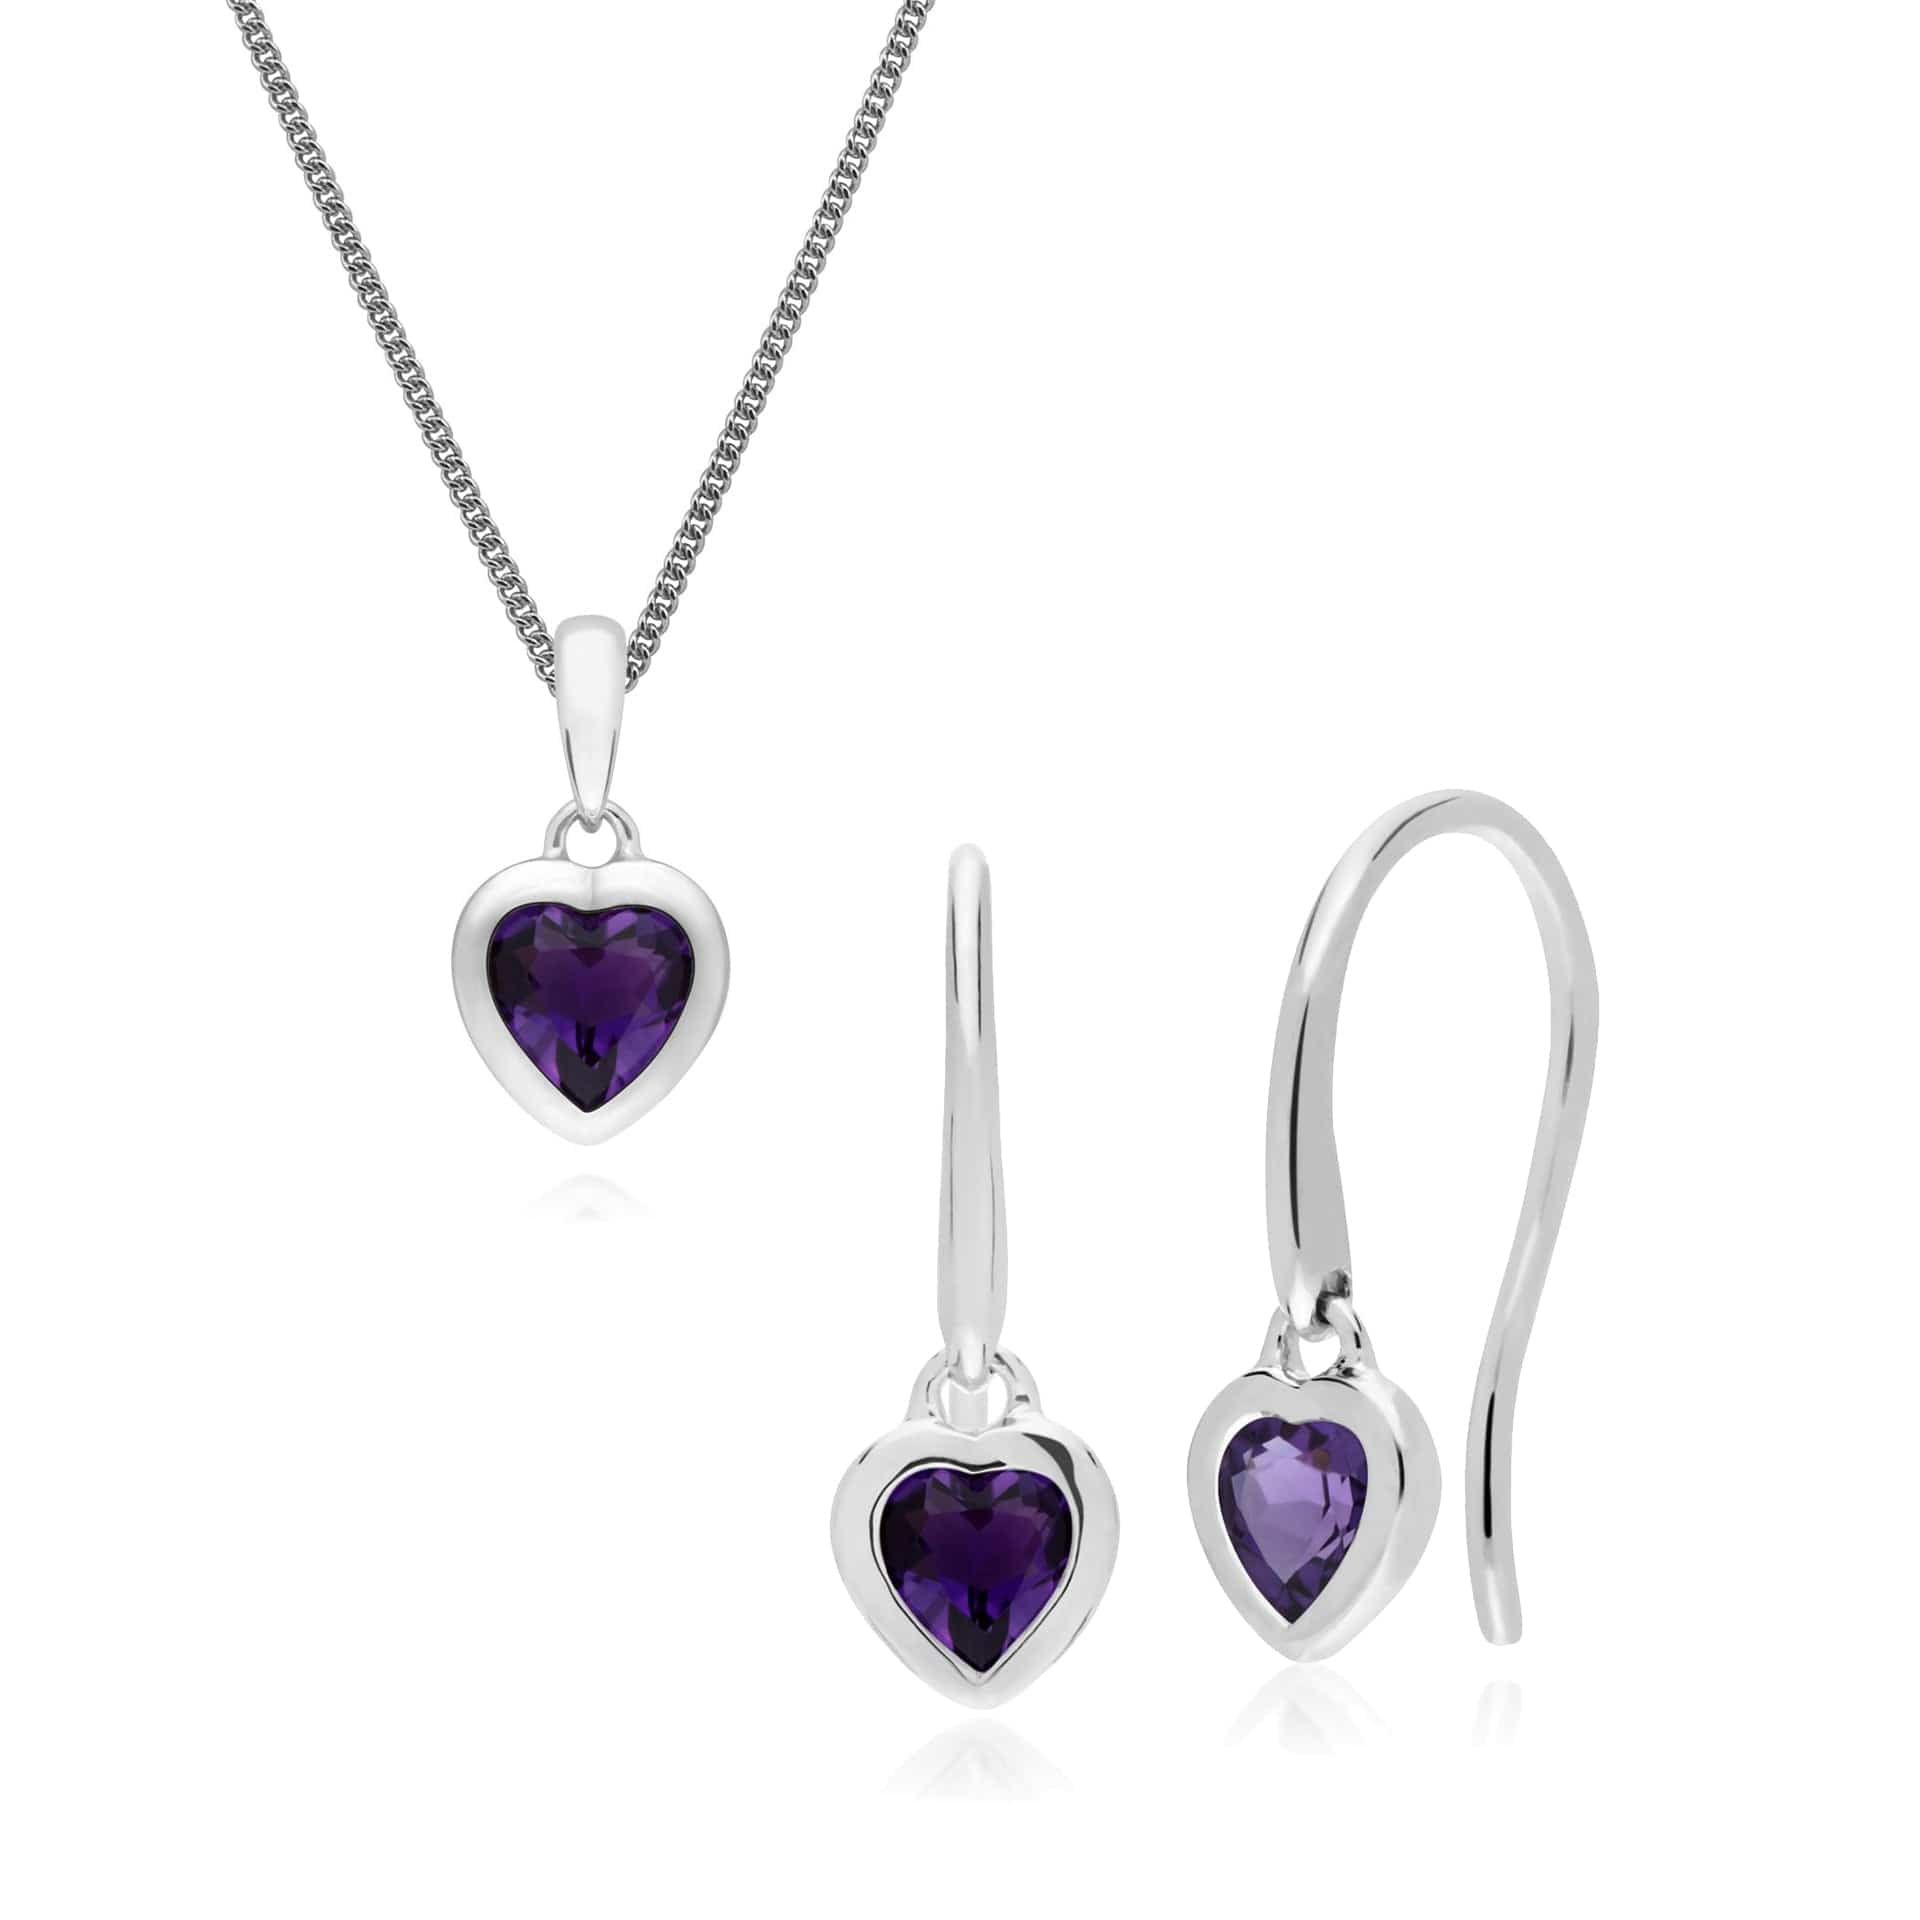 270E026201925-270P028701925 Classic Heart Amethyst Drop Earrings & Pendant Set in 925 Sterling Silver 1